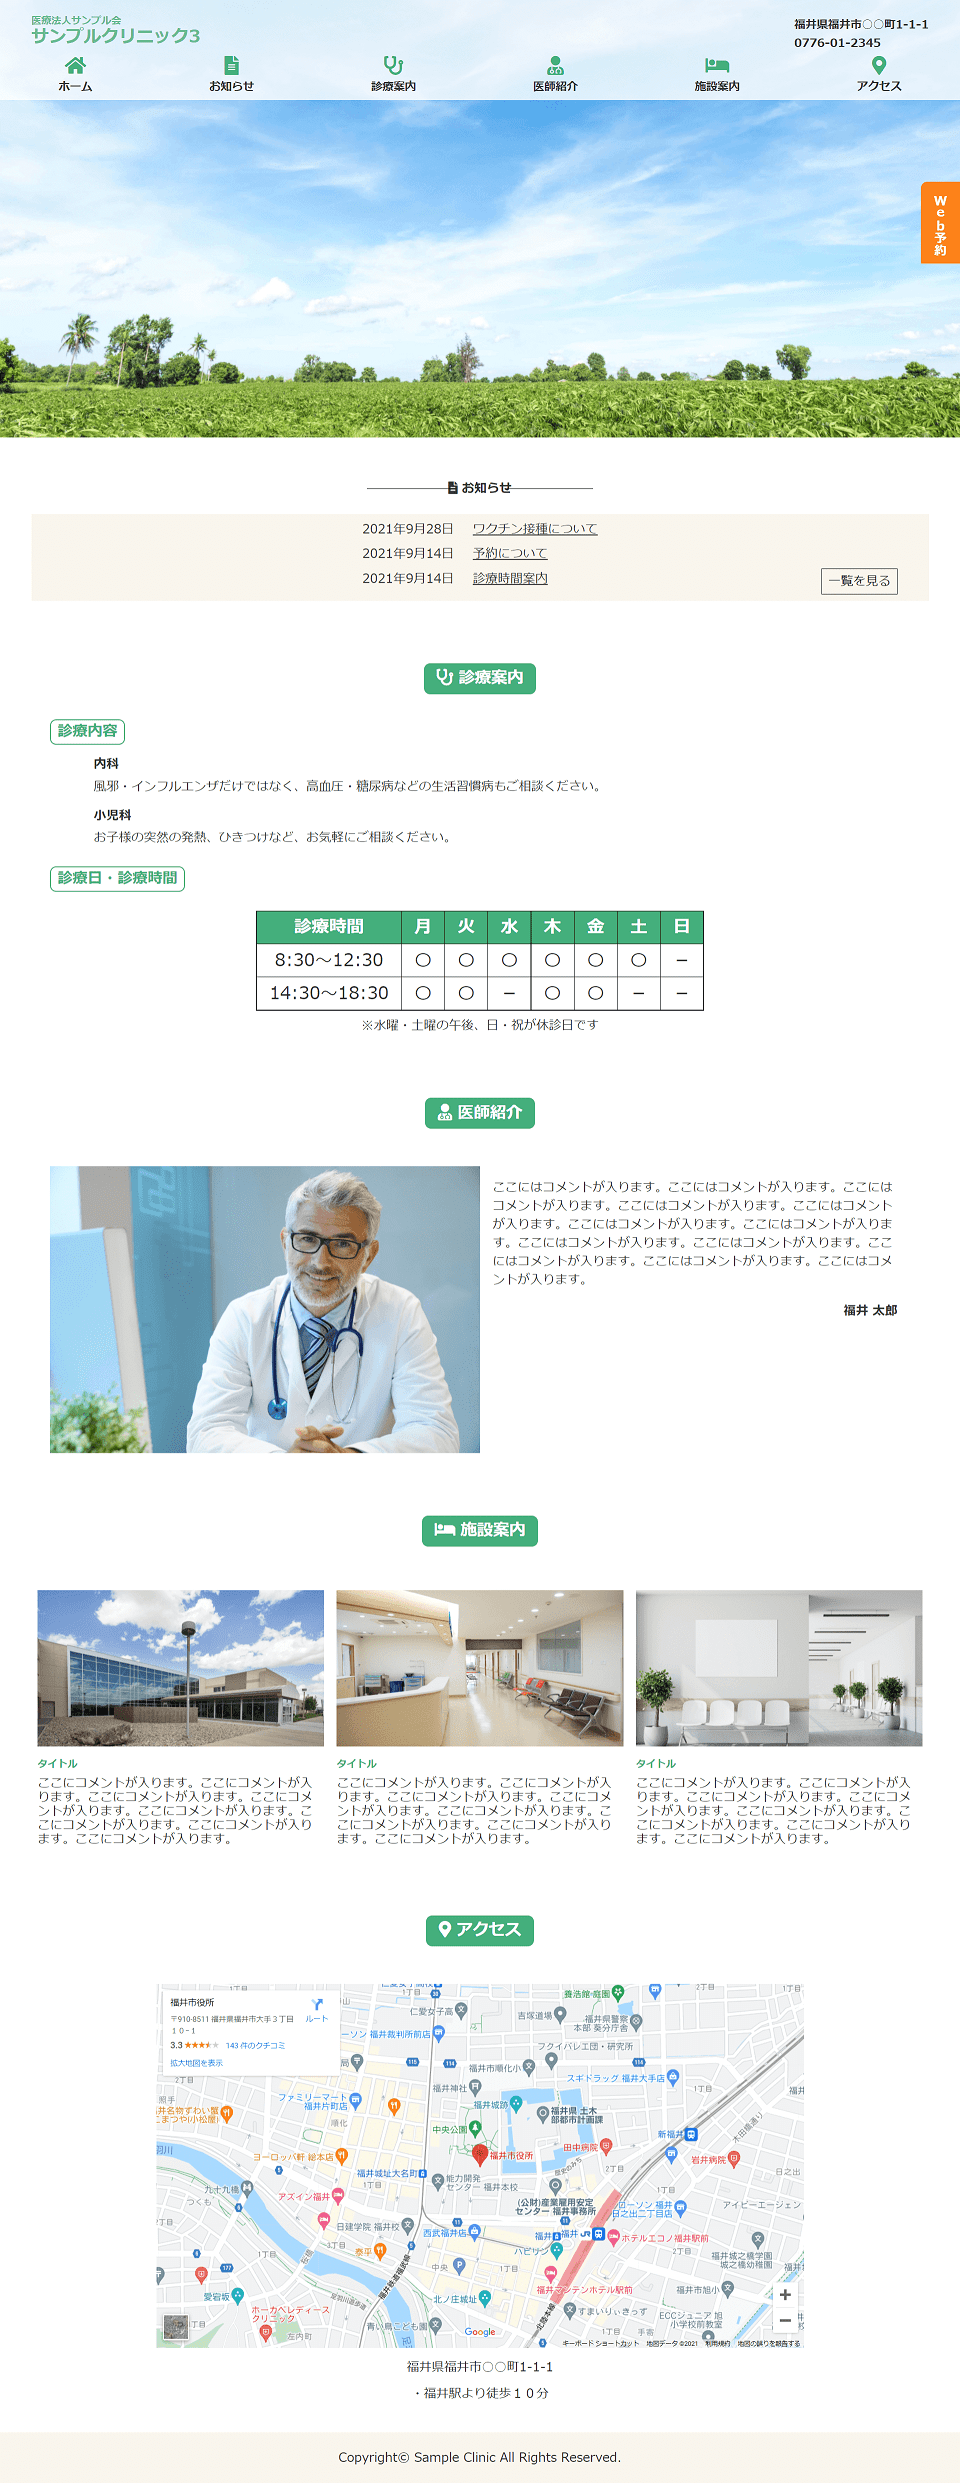 福井県福井市を拠点にするWebエンジニアが作成したクリニックのサンプルサイト